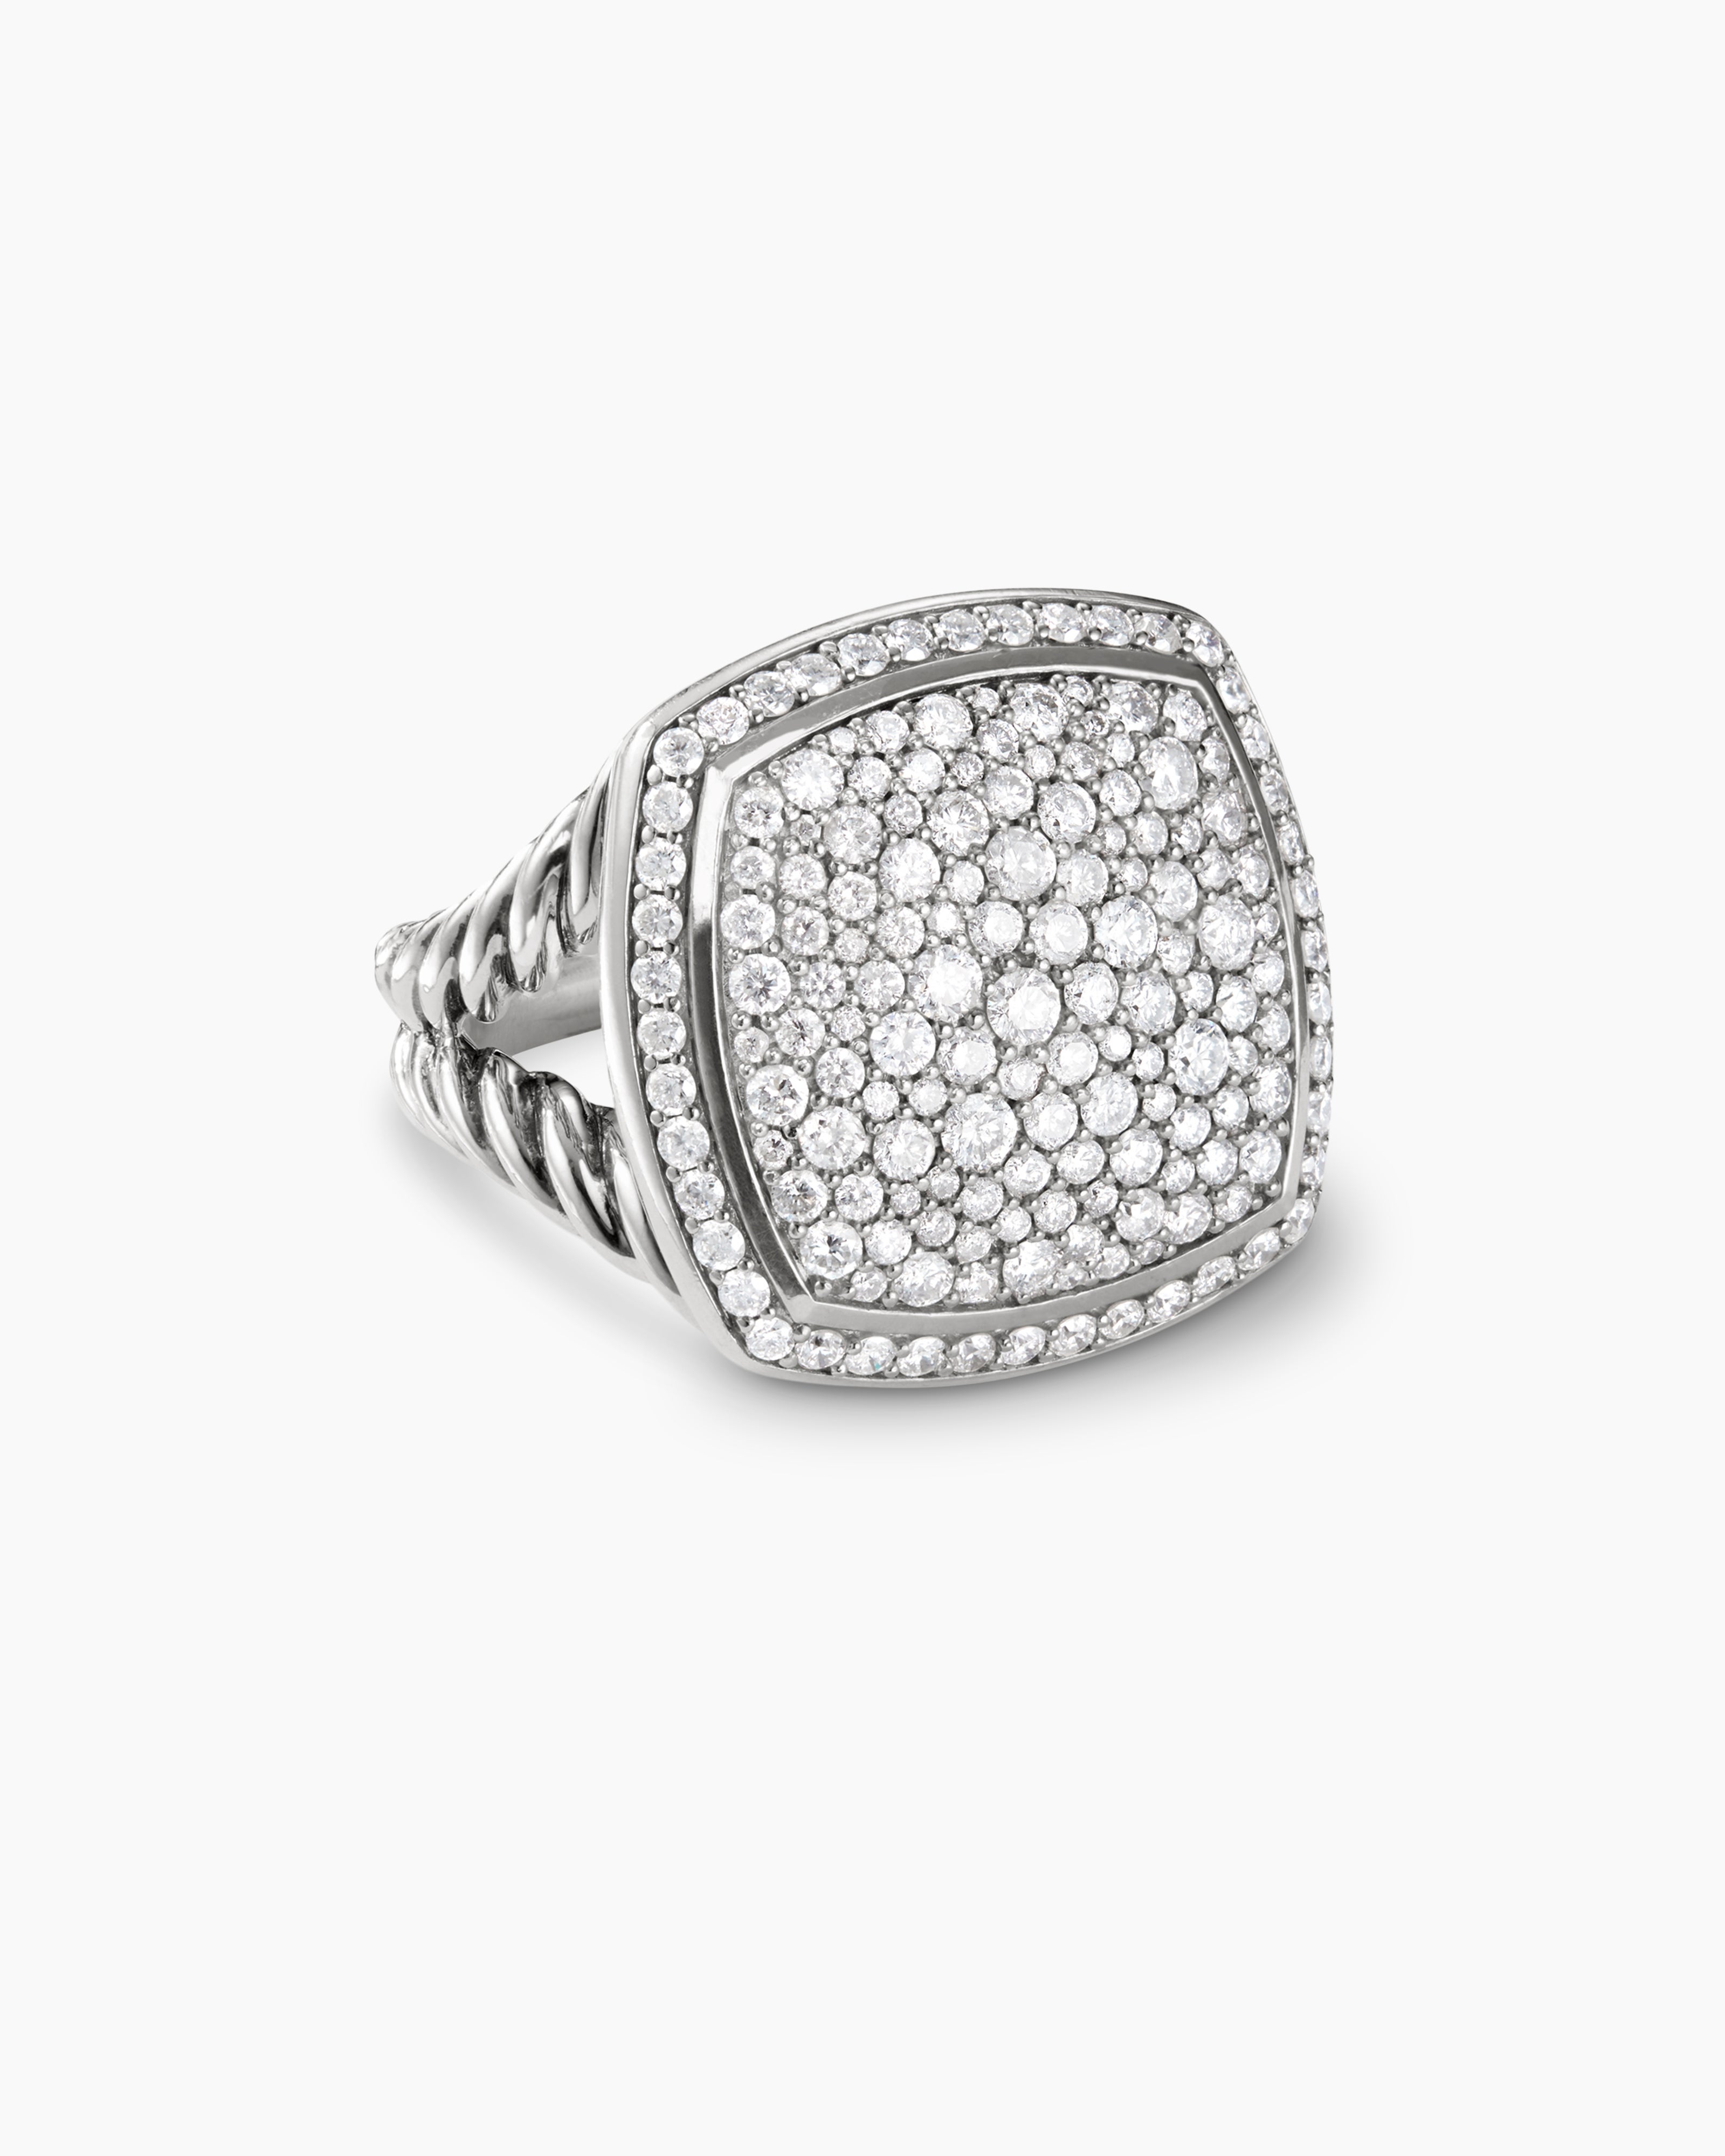 David Yurman Diamond Confetti Multistrand Necklace - Sterling Silver  Multistrand, Necklaces - DVY133130 | The RealReal